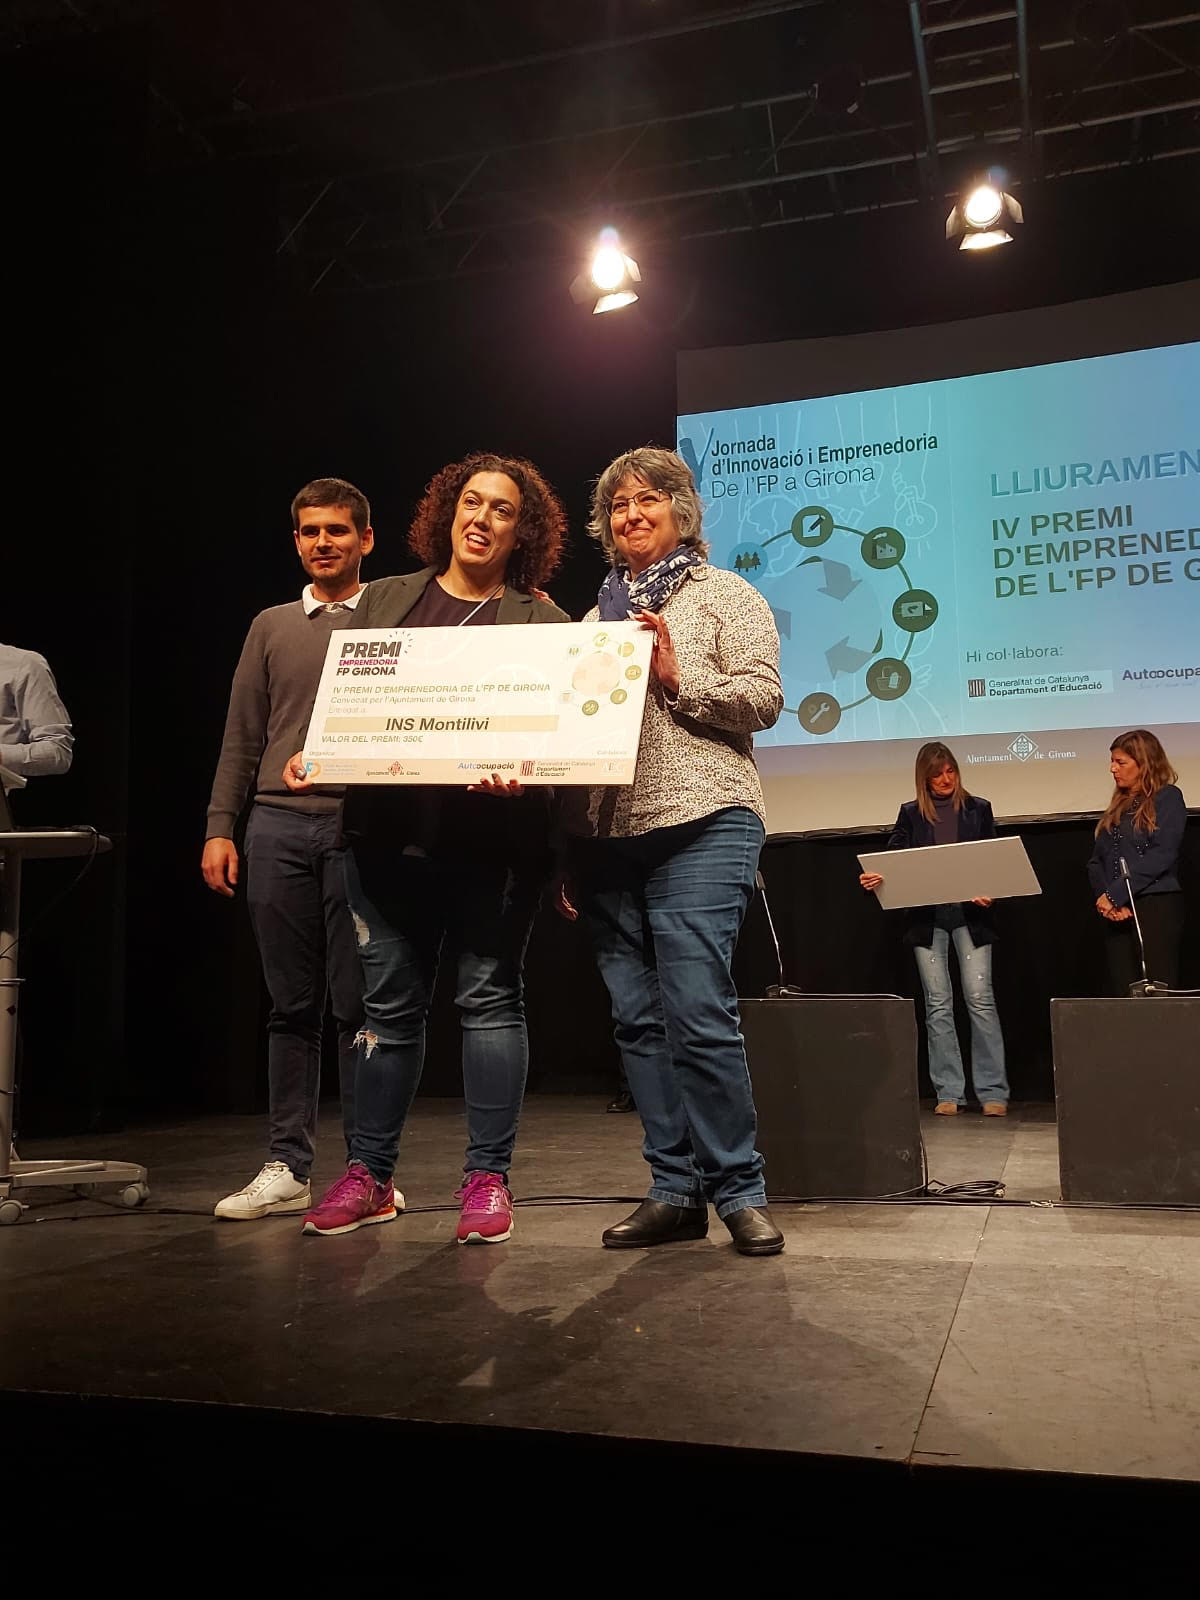 Premi alumnes de Gestió Administrativa Jornada d'innovació i emprenedoria FP de Girona